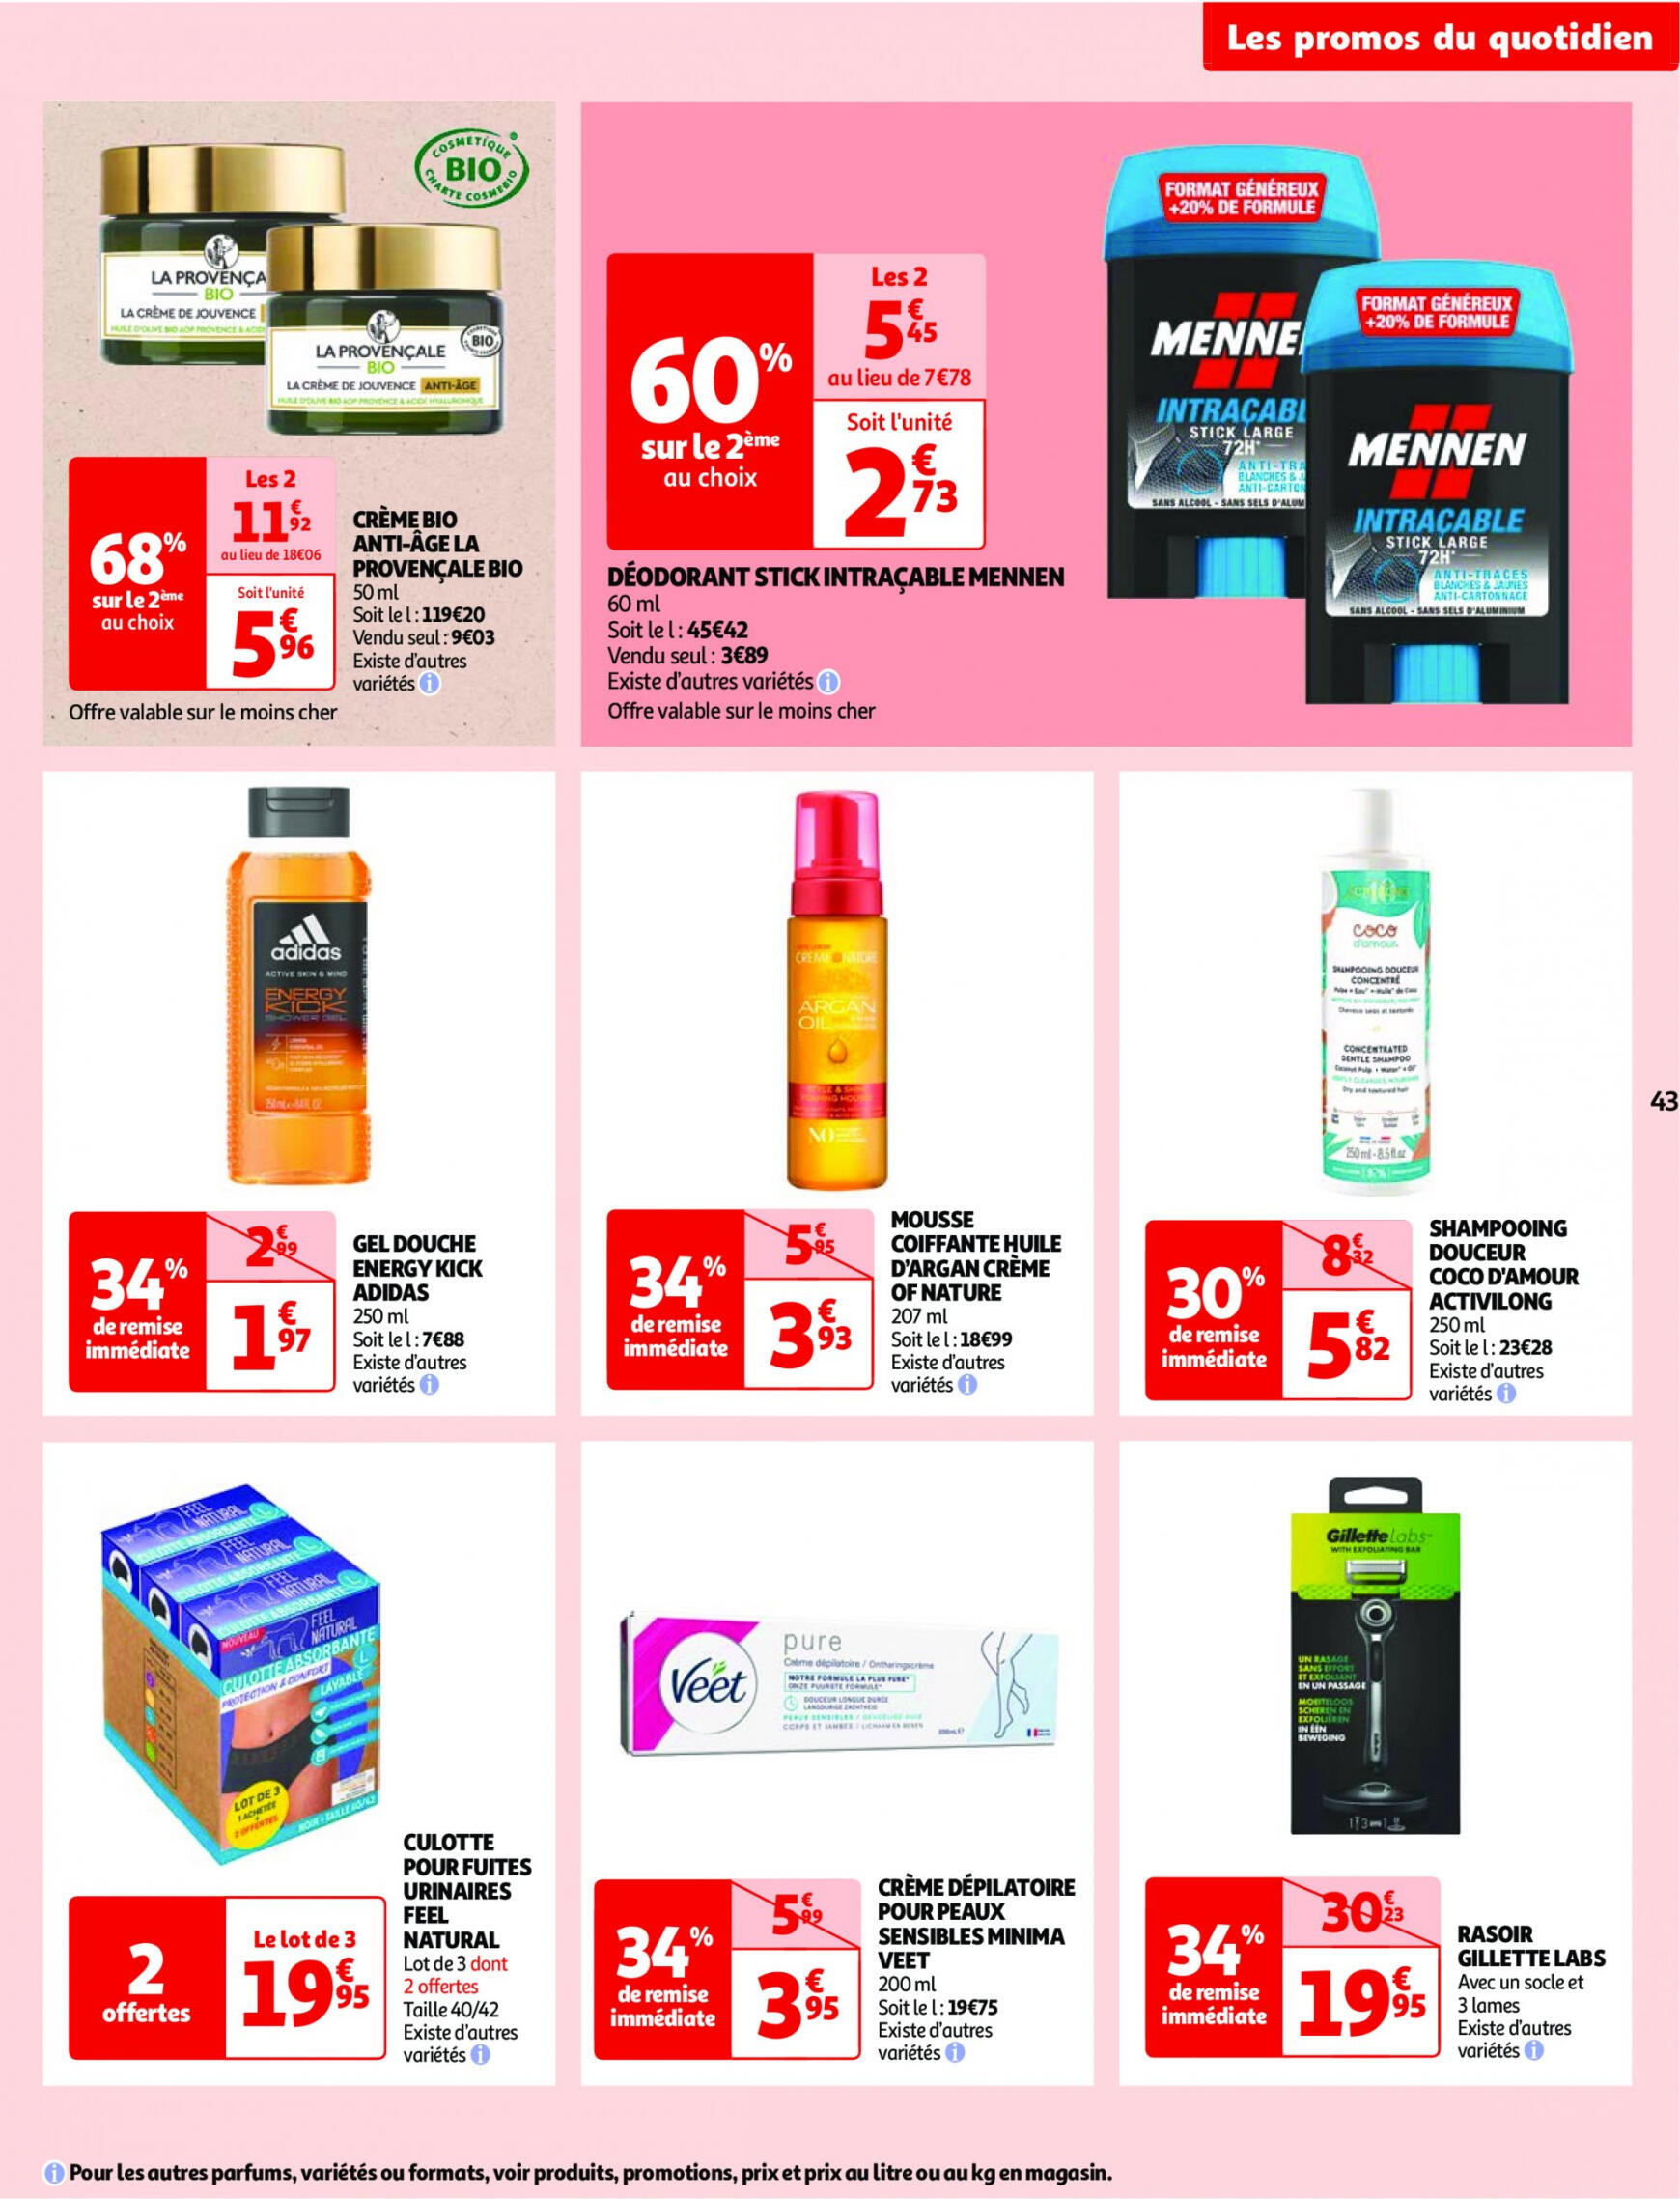 auchan - Prospectus Auchan actuel 14.05. - 21.05. - page: 43